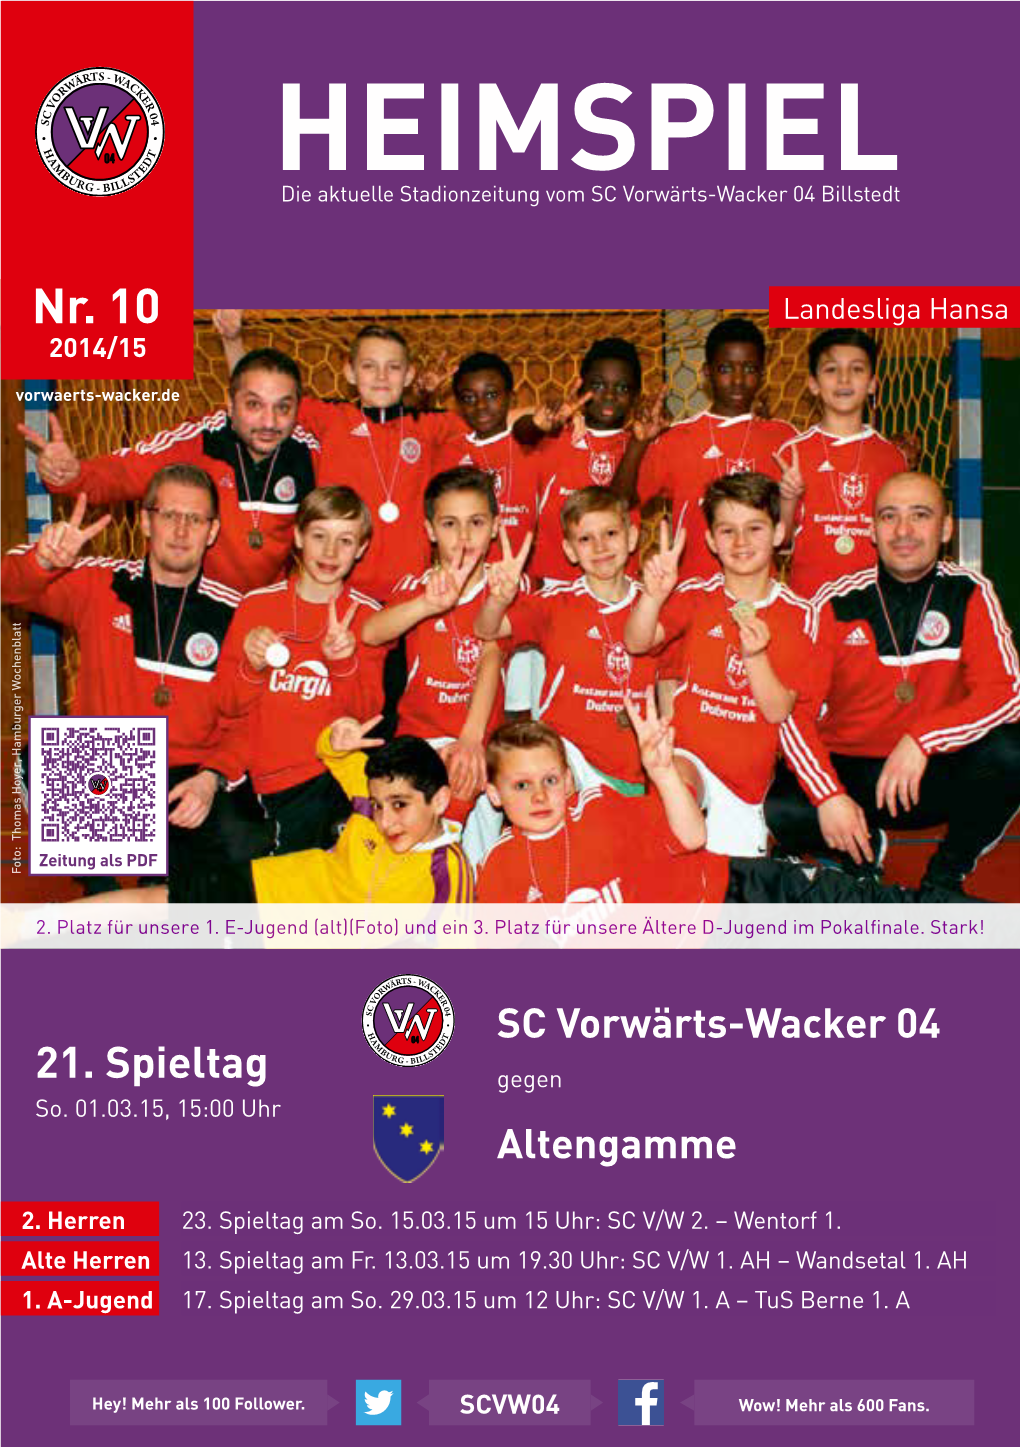 HEIMSPIEL - BI Die Aktuelle Stadionzeitung Vom SC Vorwärts-Wacker 04 Billstedt